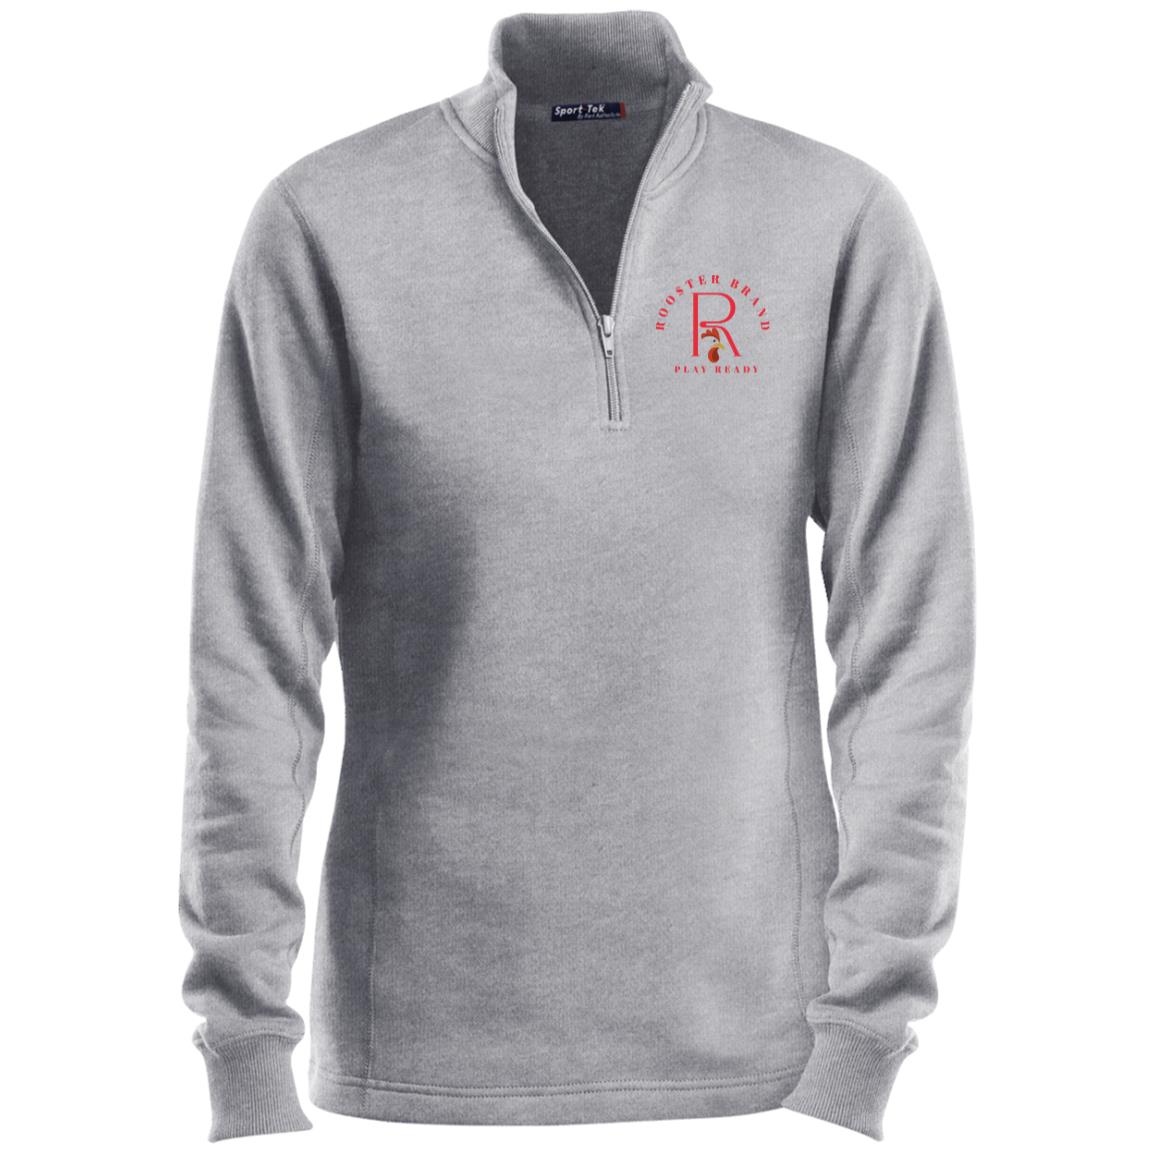 Roo$ter Brand Ladies 1/4 Zip Sweatshirt